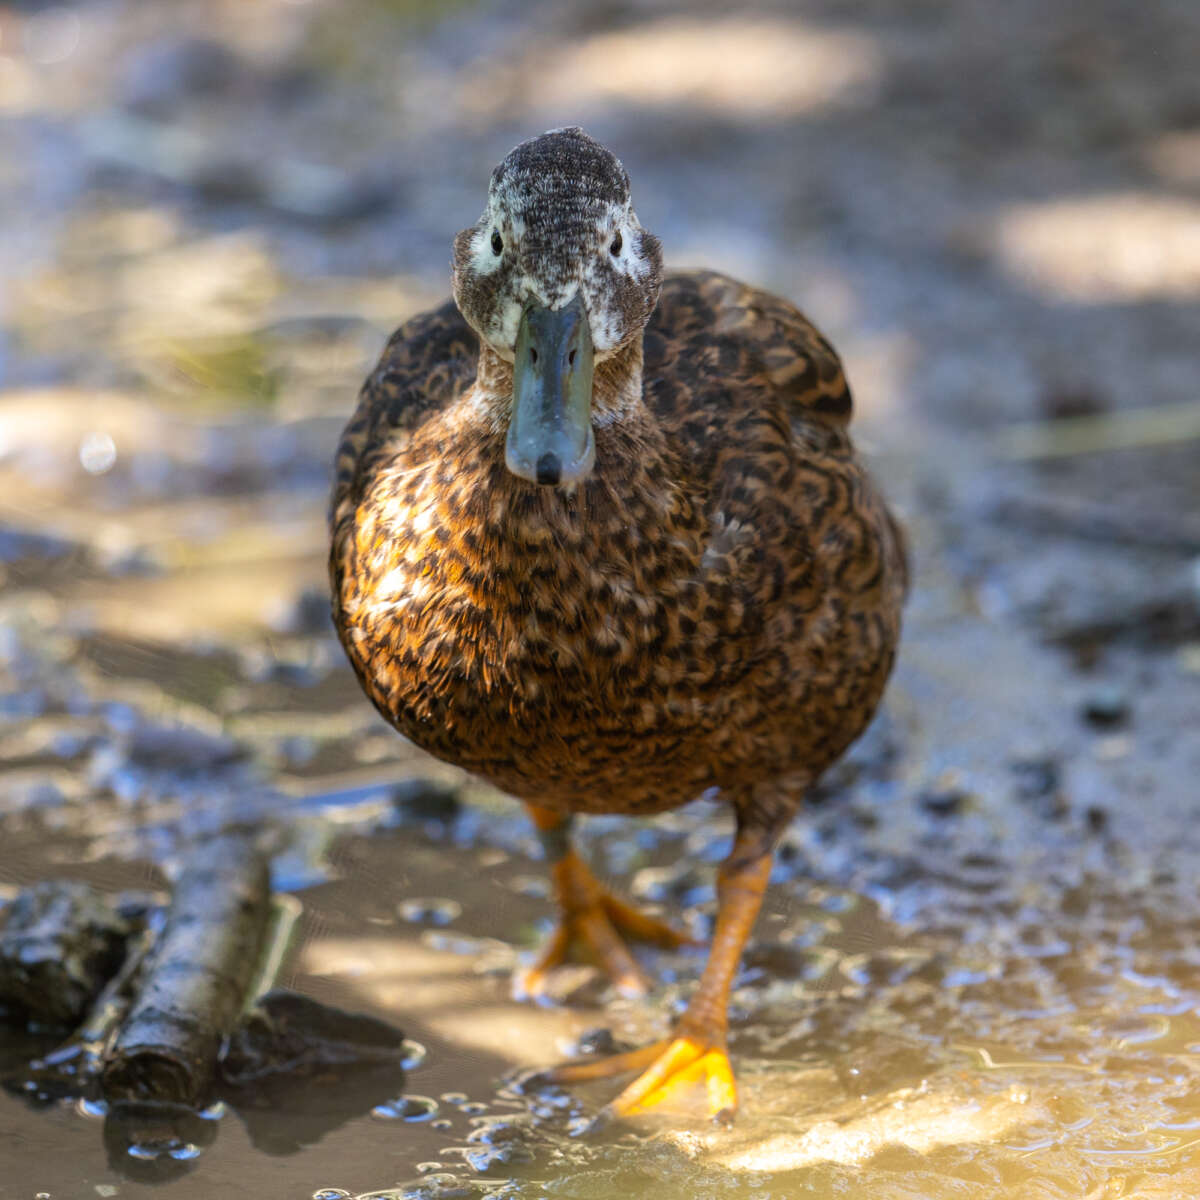 Laysan duck at Safari West